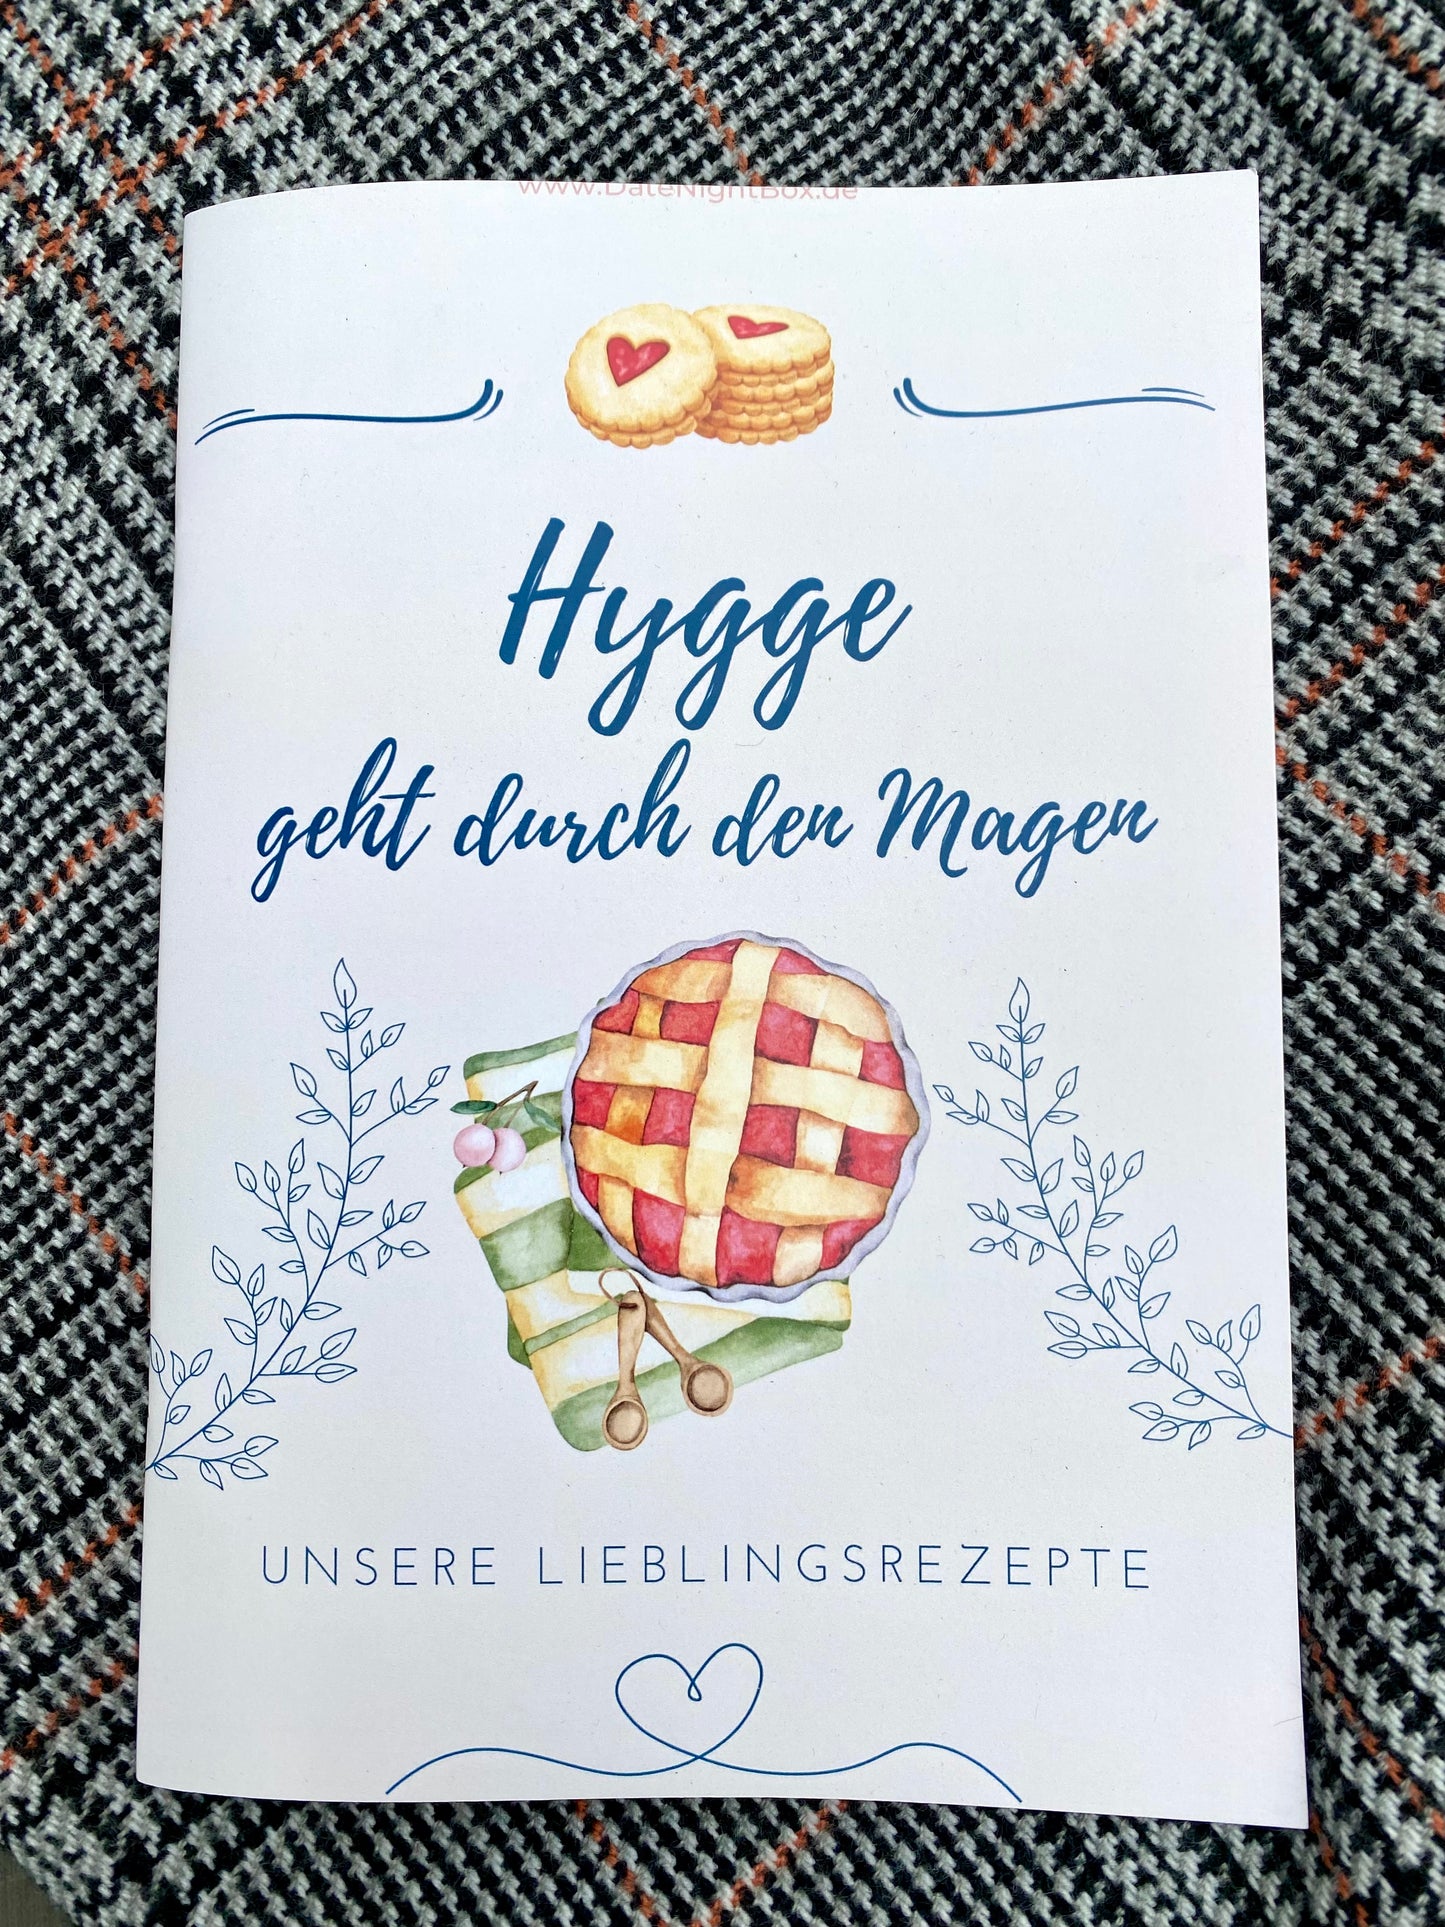 Hygge Box